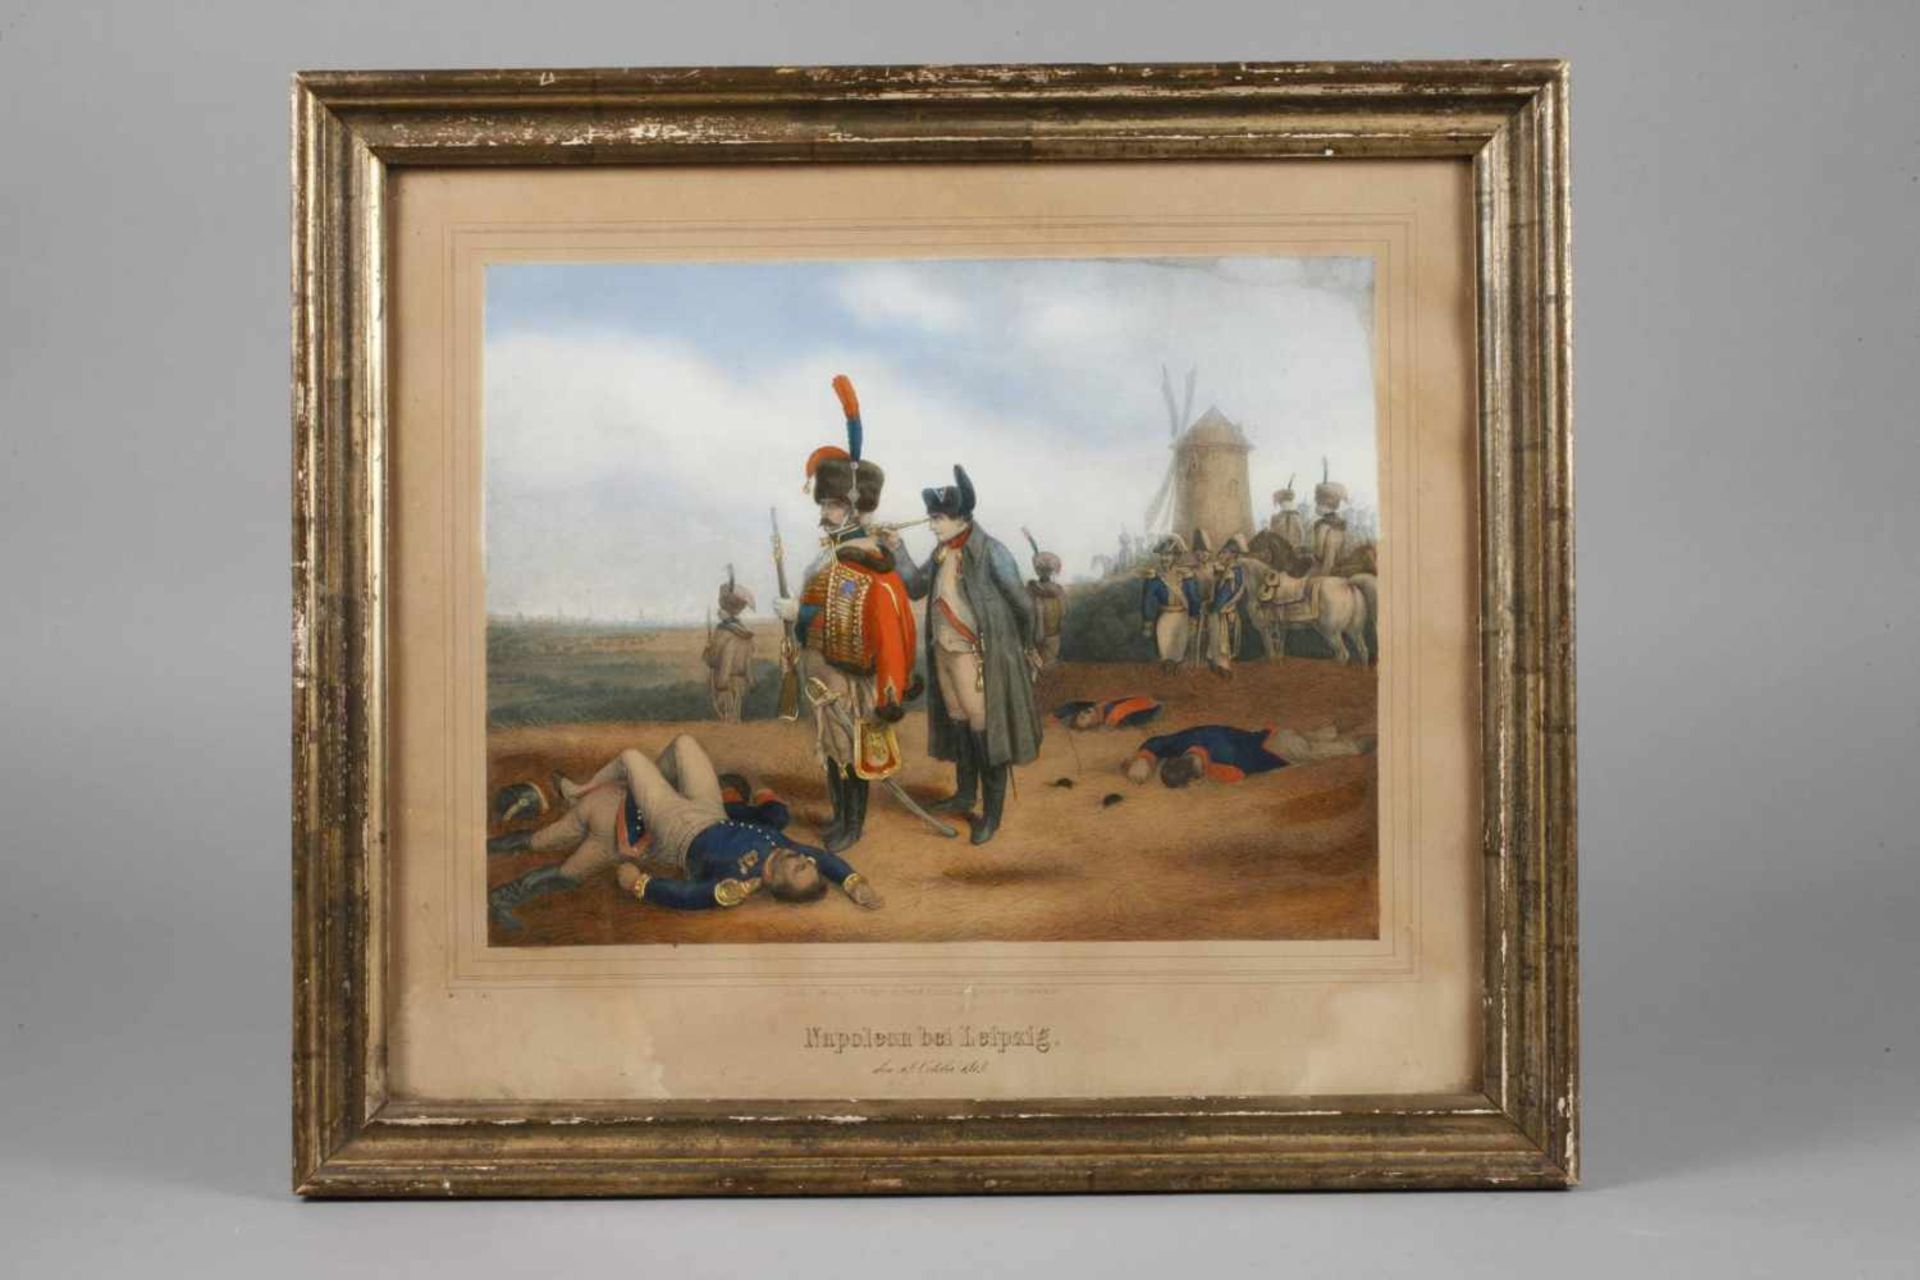 Erdmann Ludwig Blau, "Napoleon bei Leipzig" der Kaiser von Frankreich an der Quandtschen Tabaksmühle - Bild 2 aus 3